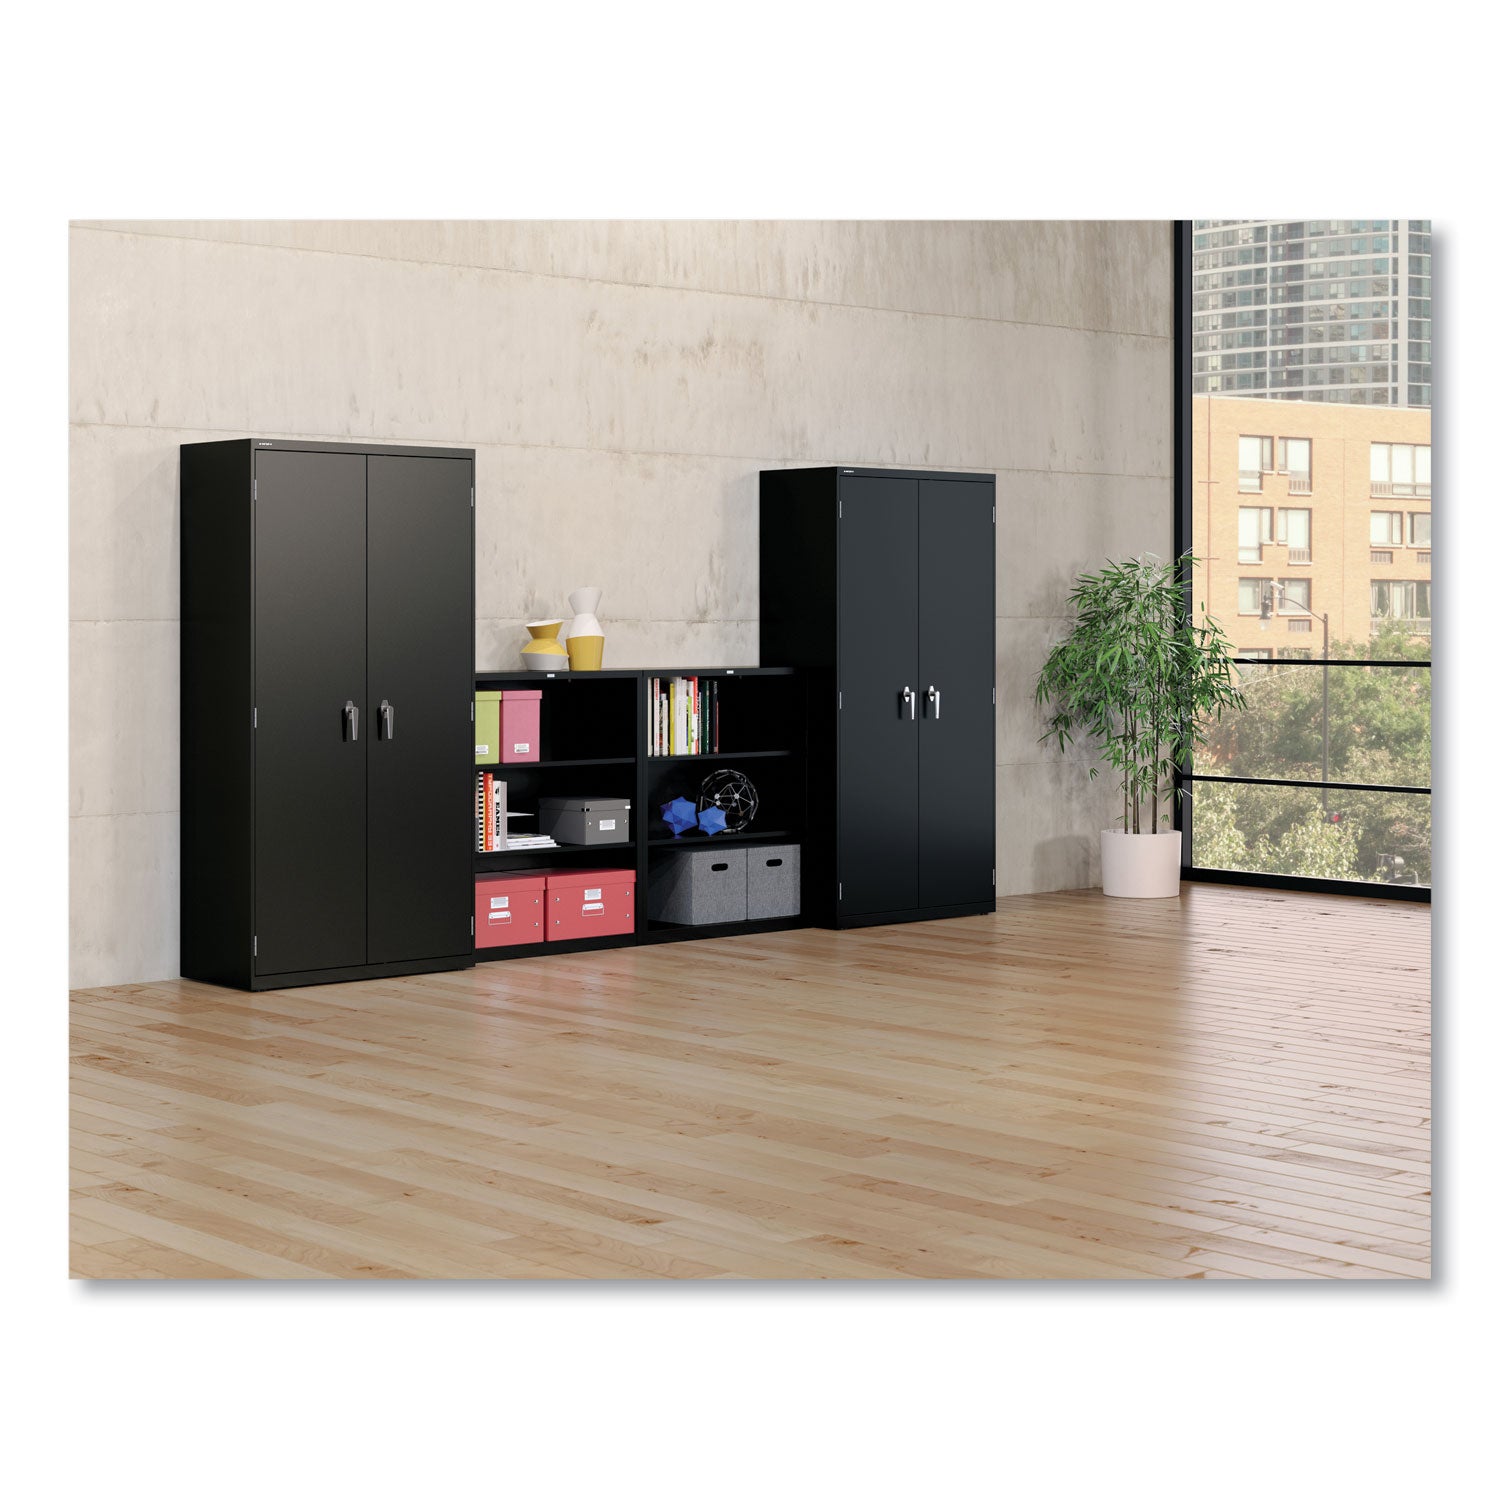 Metal Bookcase, Three-Shelf, 34.5w x 12.63d x 41h, Black - 